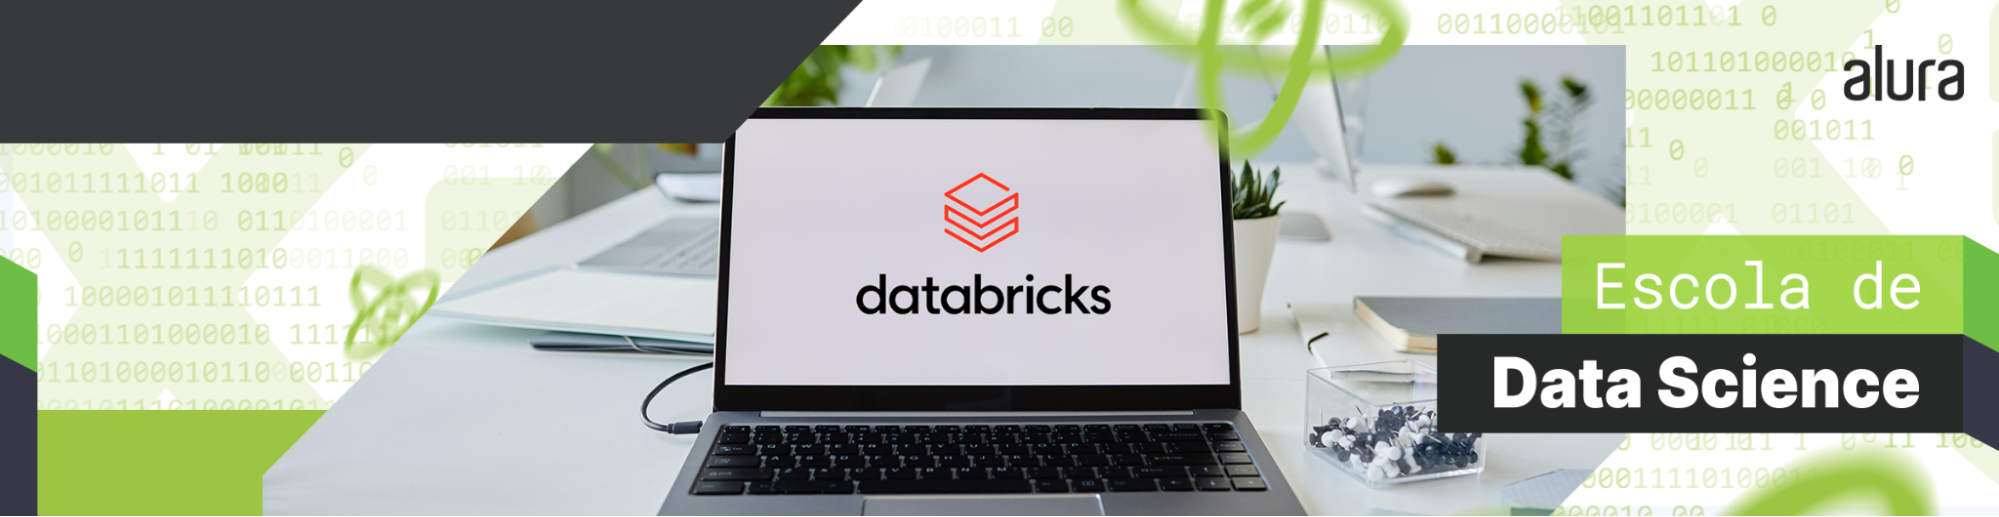 Databricks: o que é e para que serve?